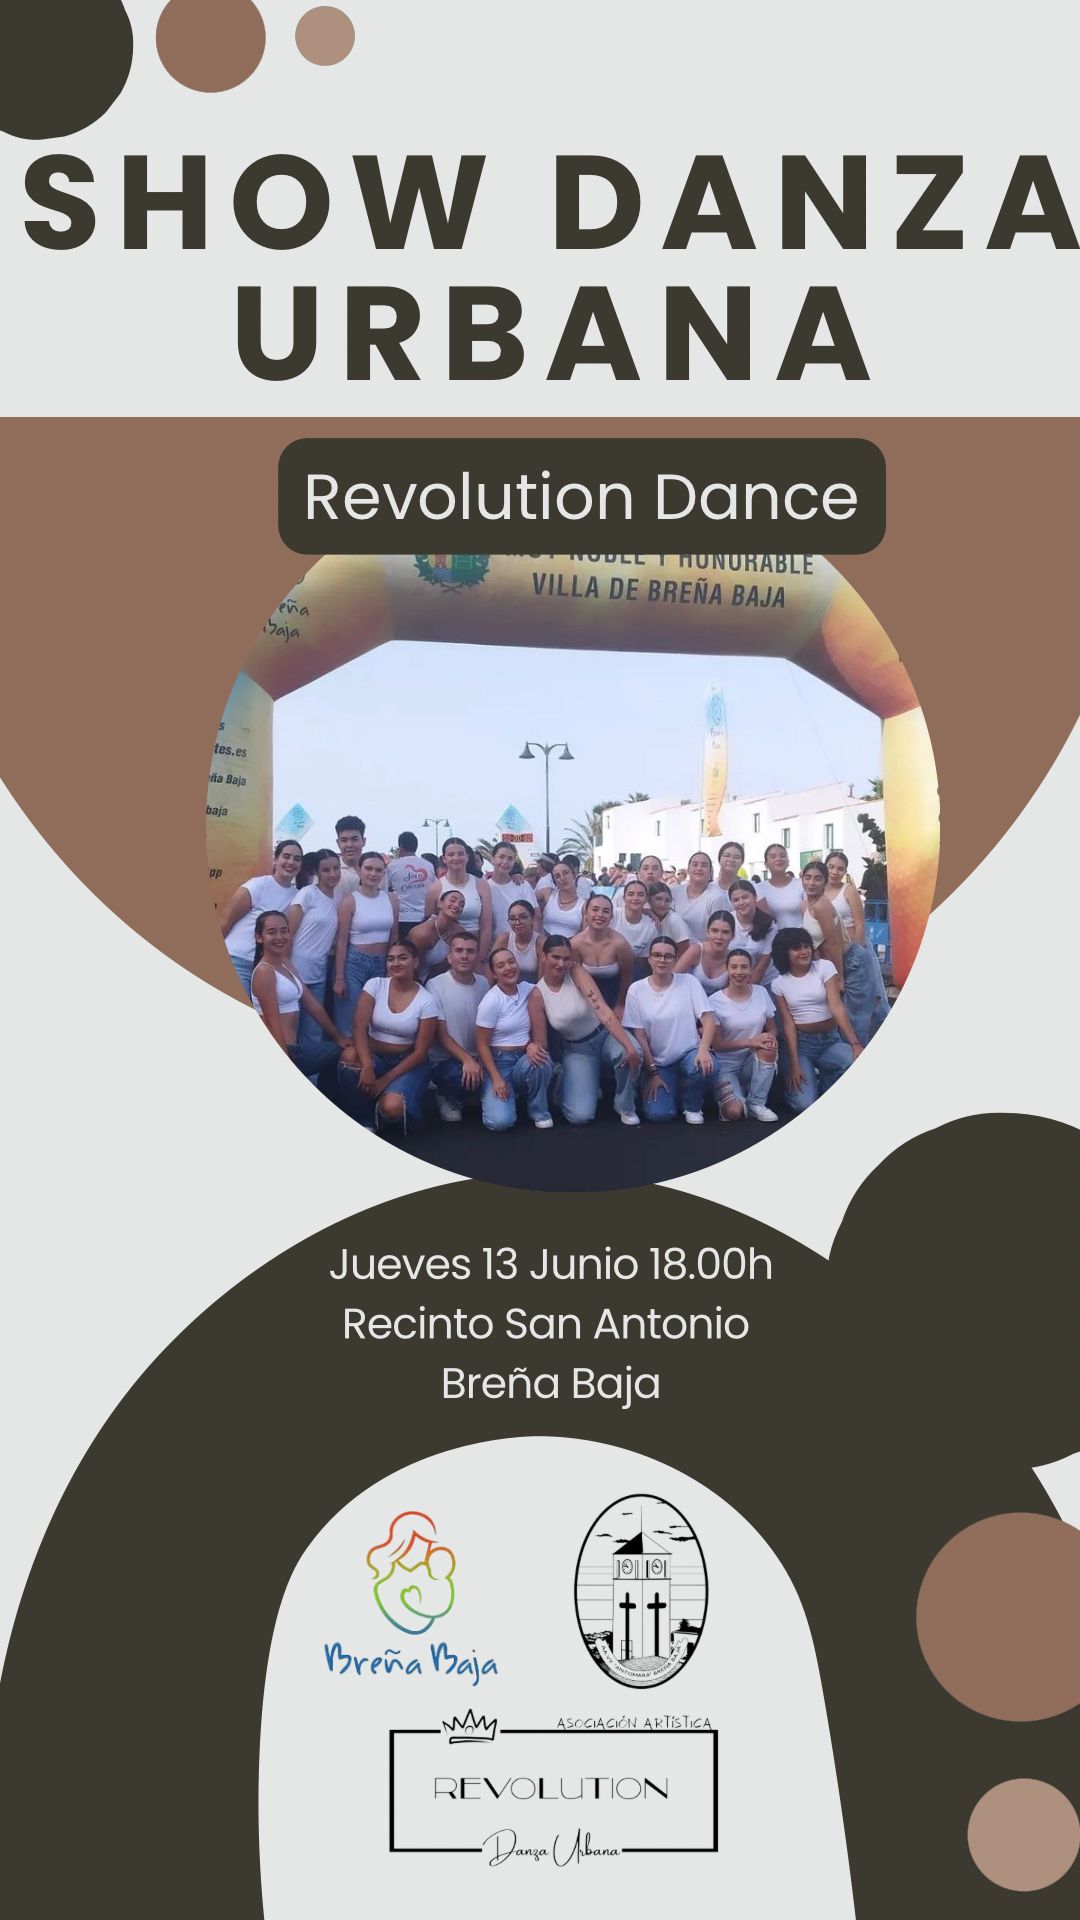 Show de danza urbana en Breña Baja